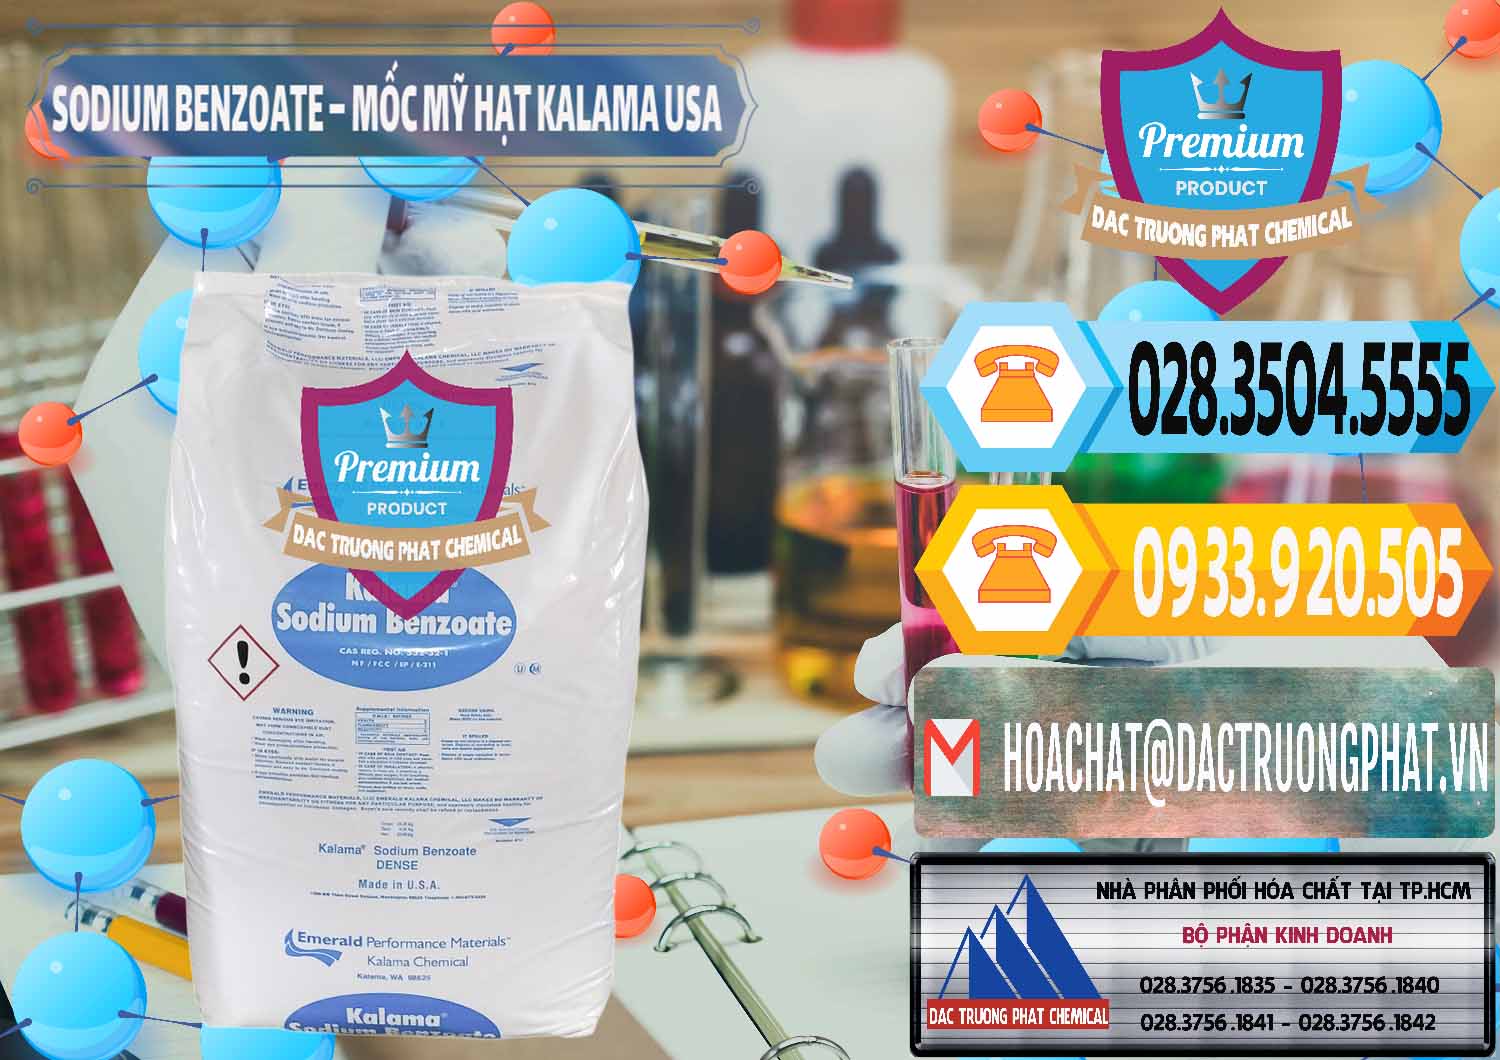 Nơi chuyên phân phối & bán Sodium Benzoate - Mốc Hạt Kalama Food Grade Mỹ Usa - 0137 - Công ty chuyên kinh doanh & cung cấp hóa chất tại TP.HCM - hoachattayrua.net